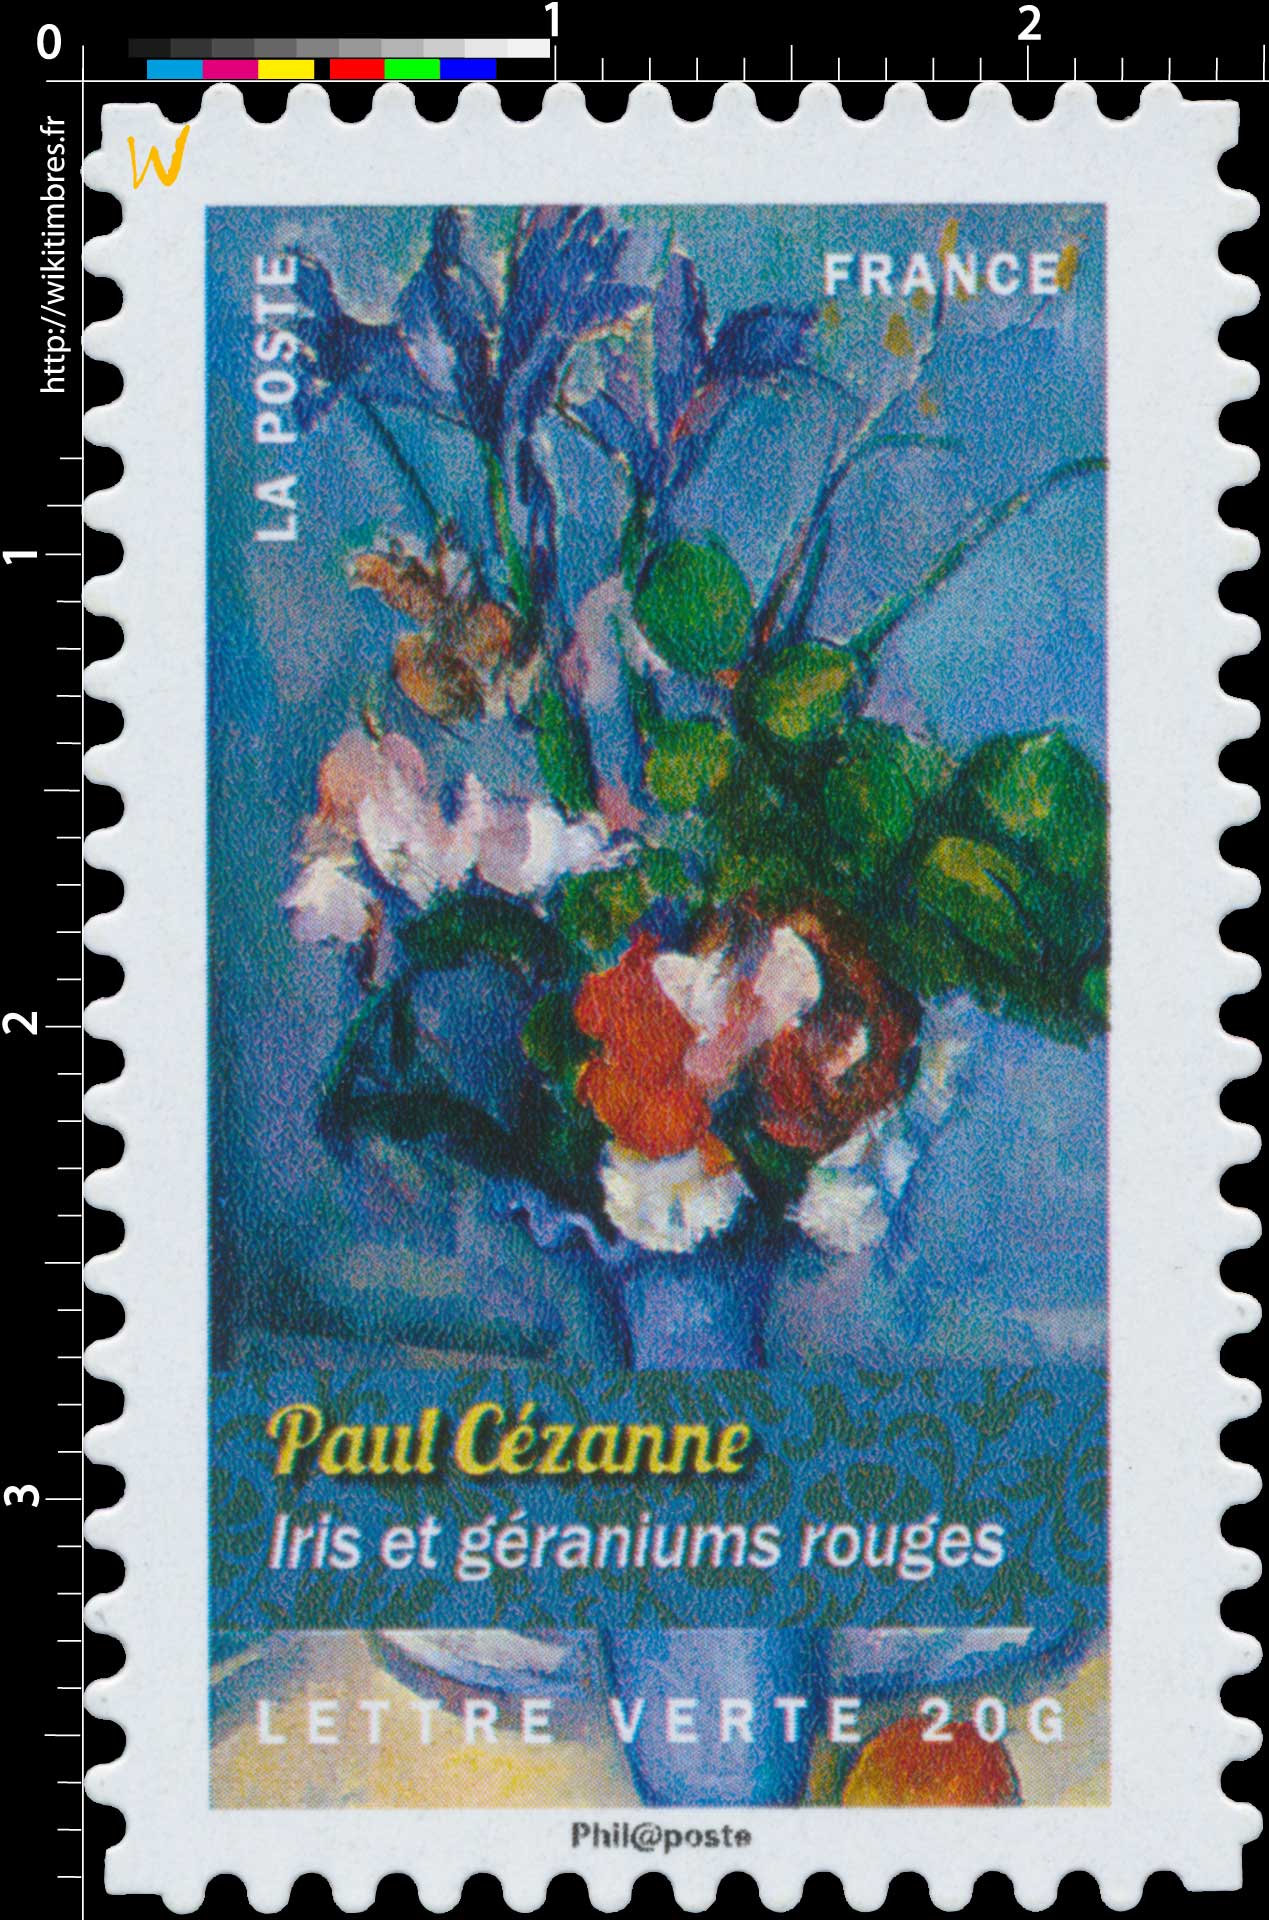 2015 Paul Cézanne - Iris et géraniums rouges